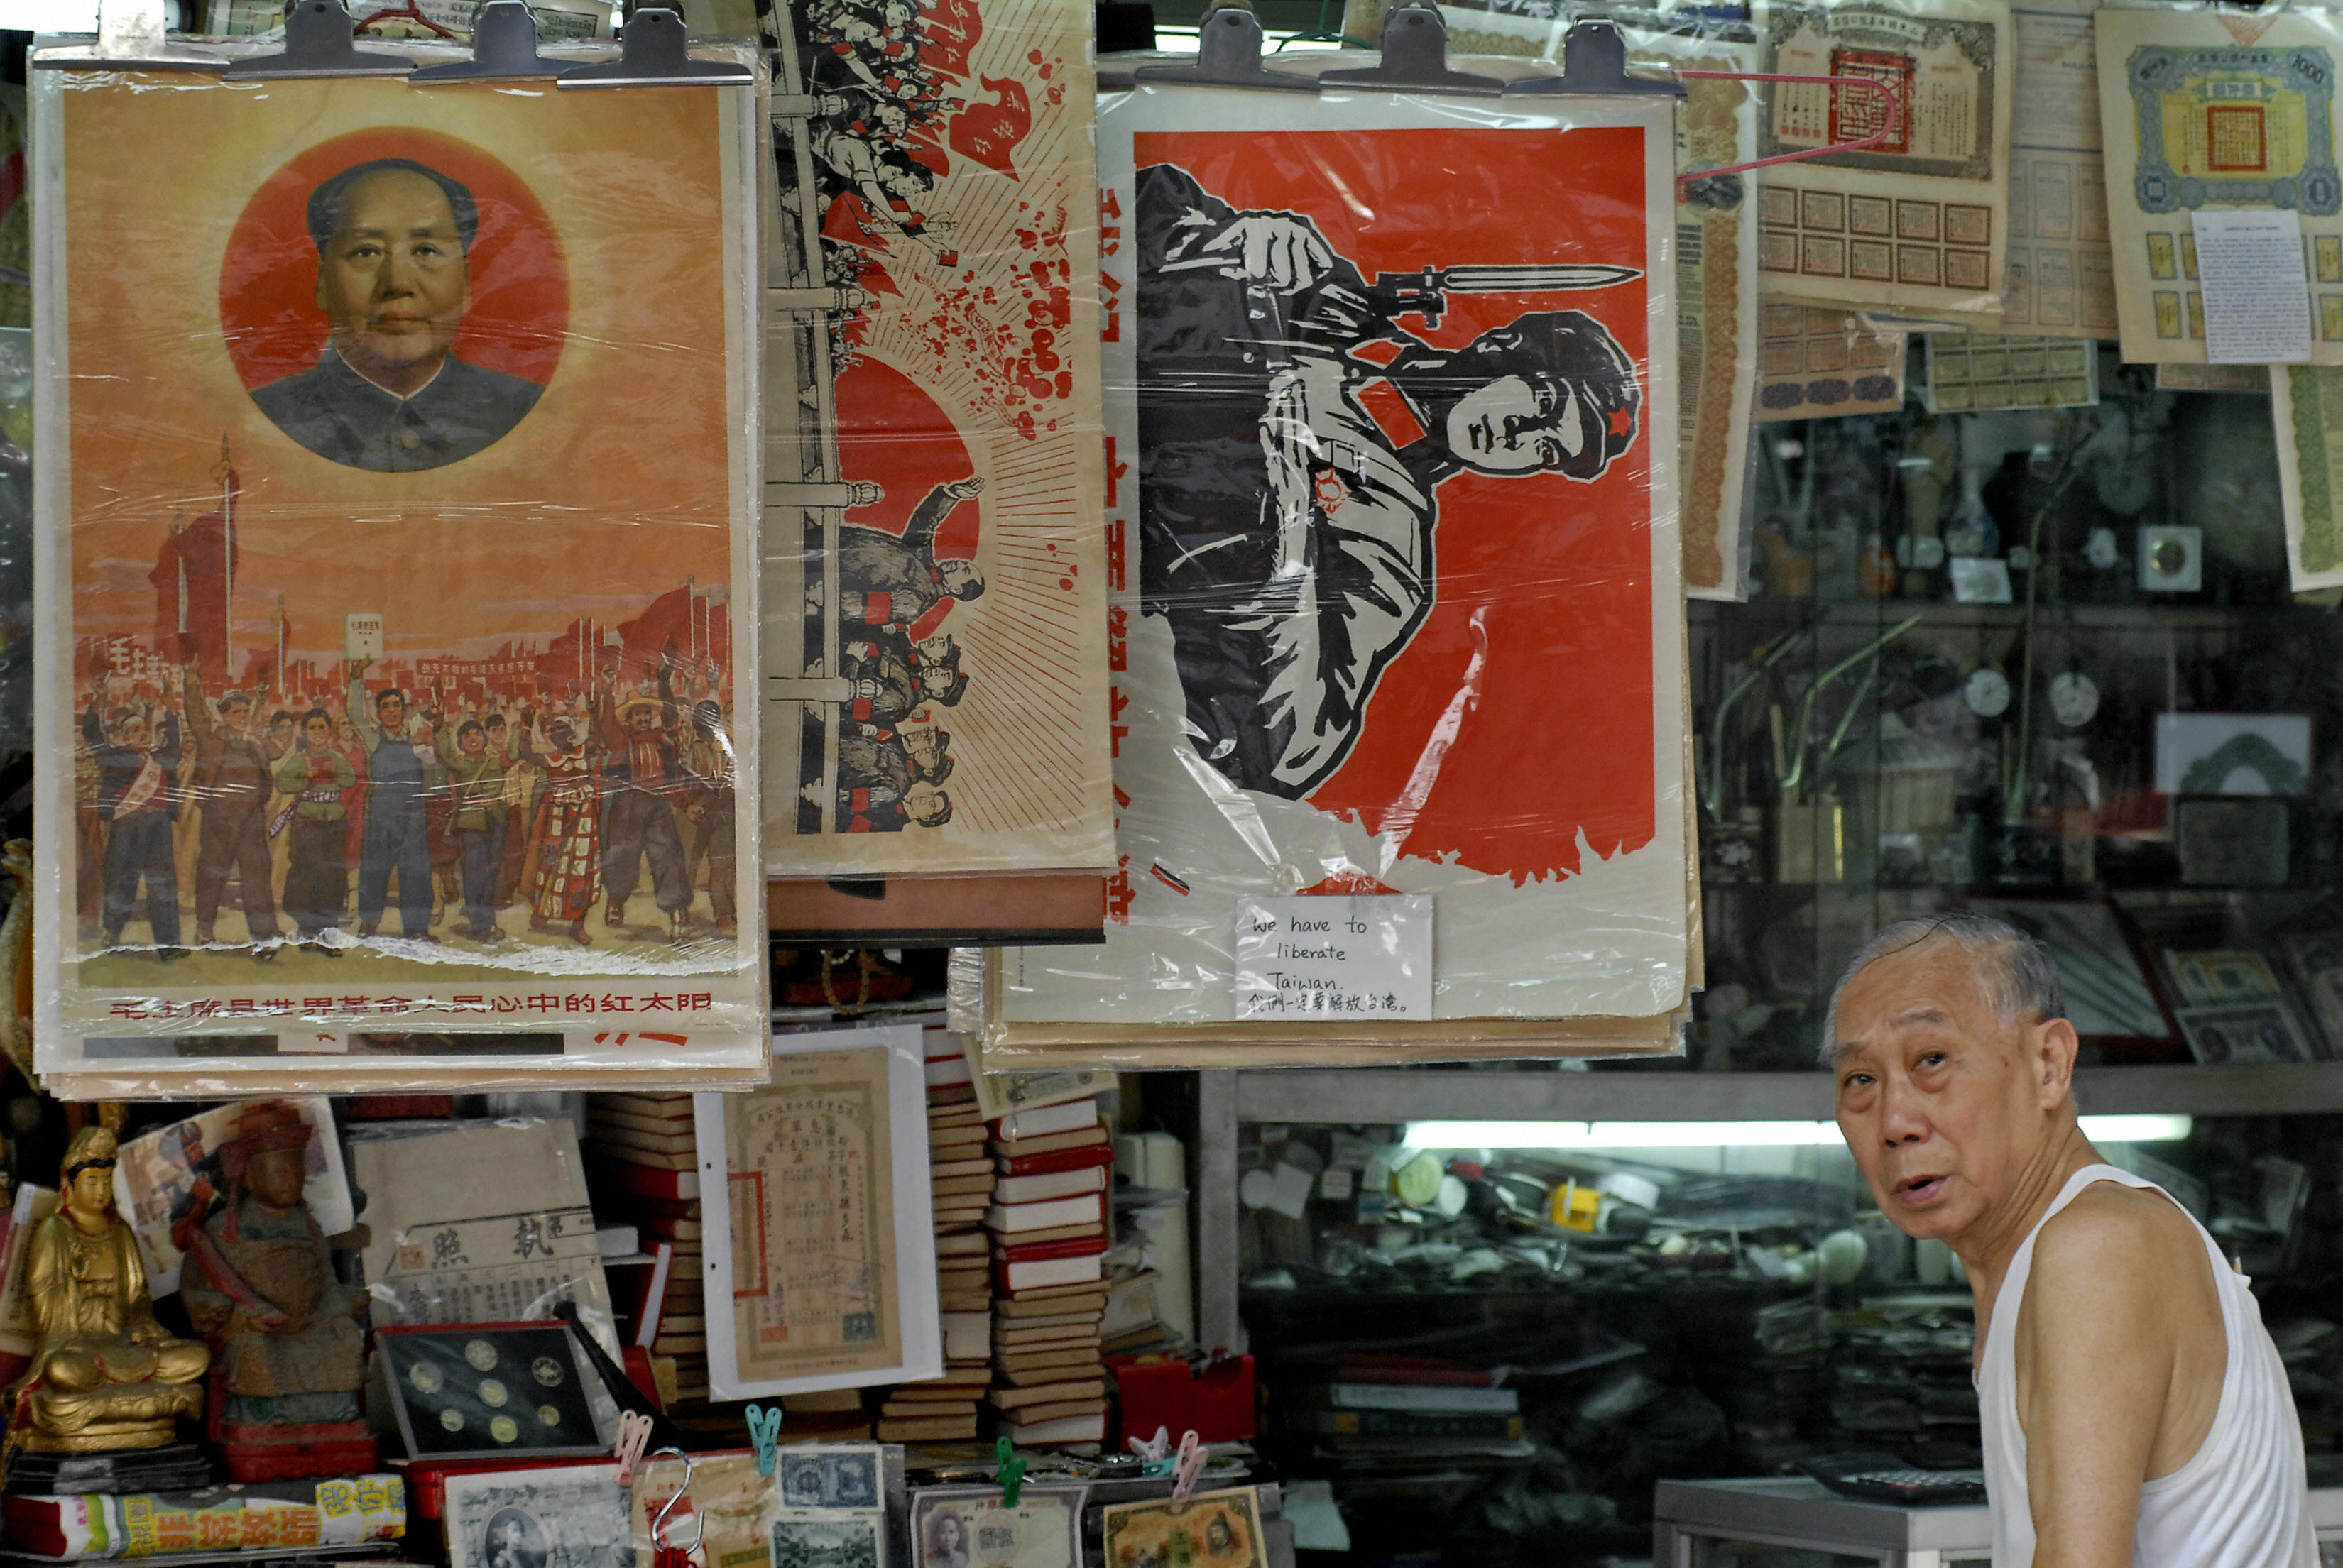 近日来台访问的香港民政事务局局长曾德成参与过1967年香港的文革暴动，因为在校内散发共产主义及反政府传单，因此被捕及判刑2年。图为香港一个旧书摊的老人展示文革时